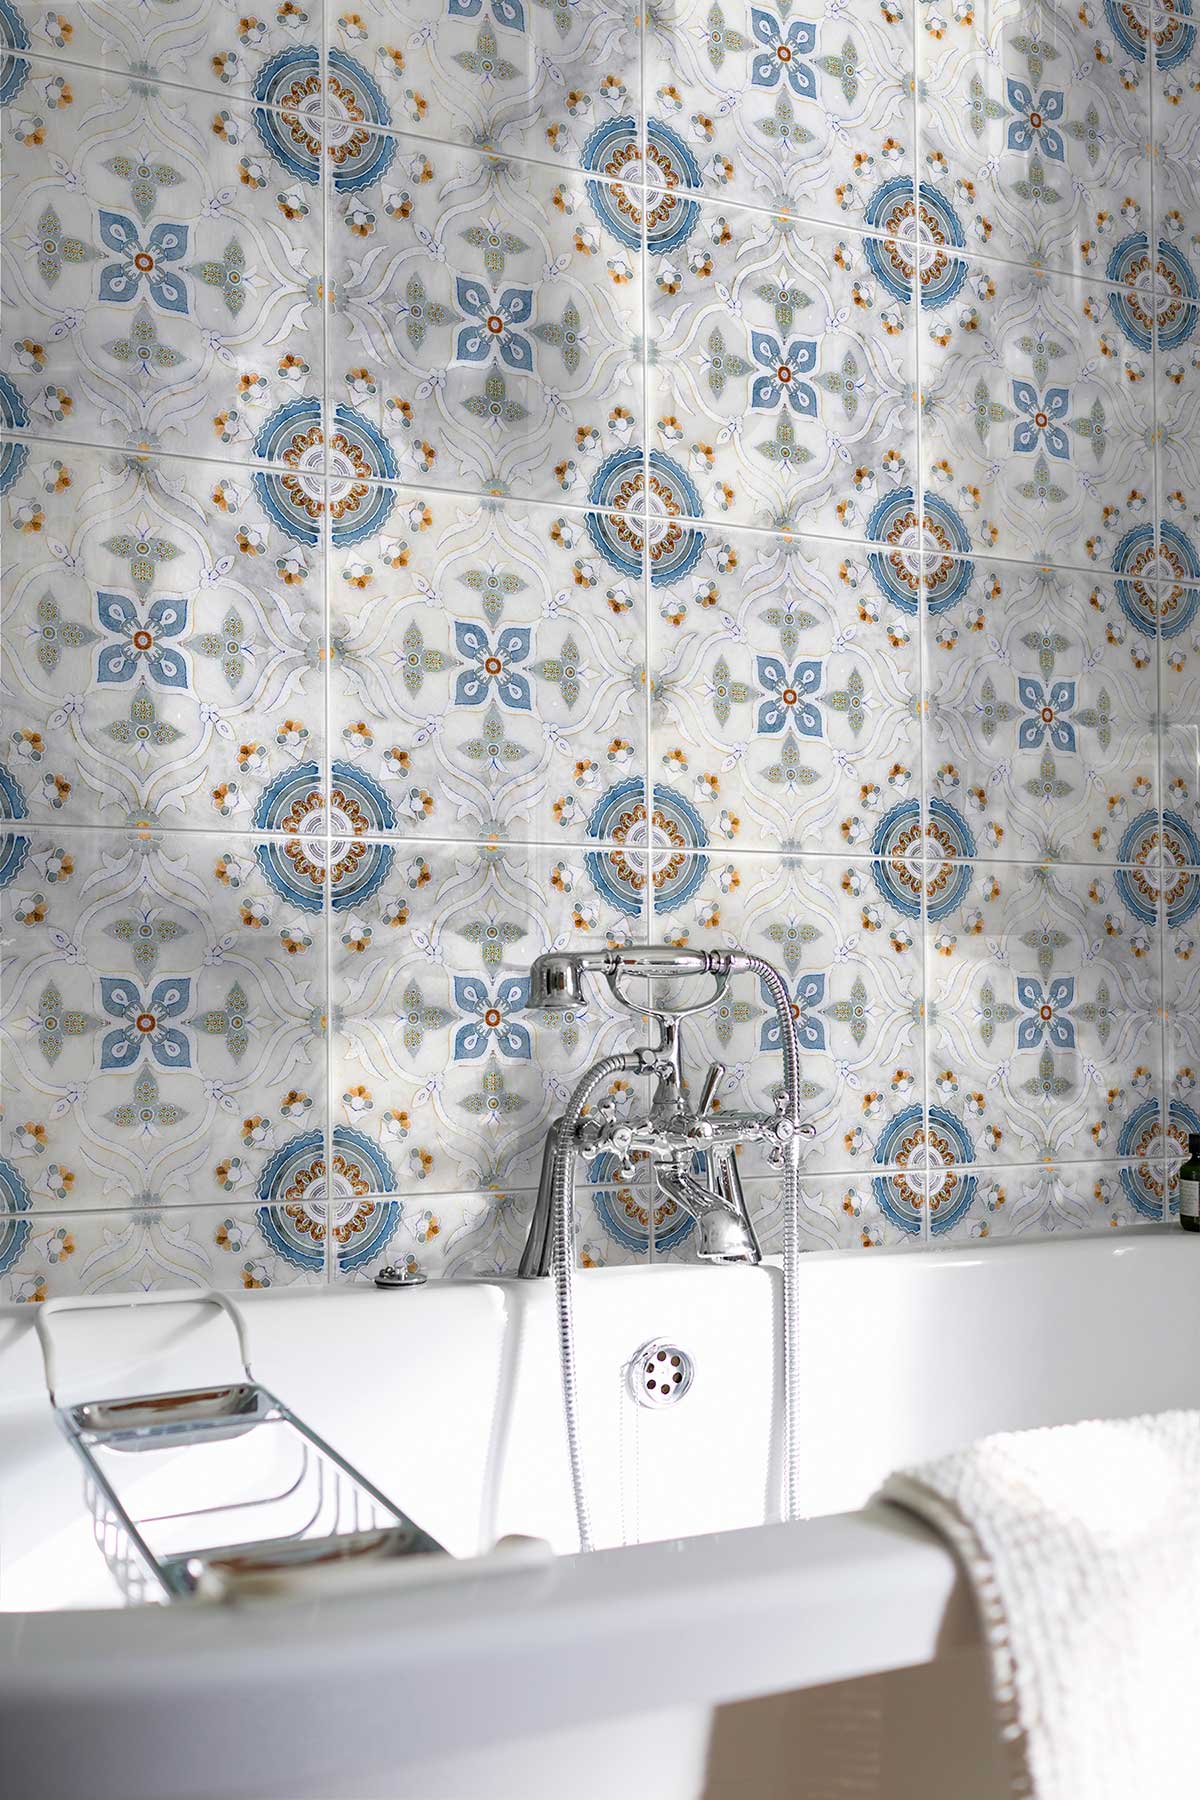 Sweden Cool Blue AST Bathroom Decorative Tile